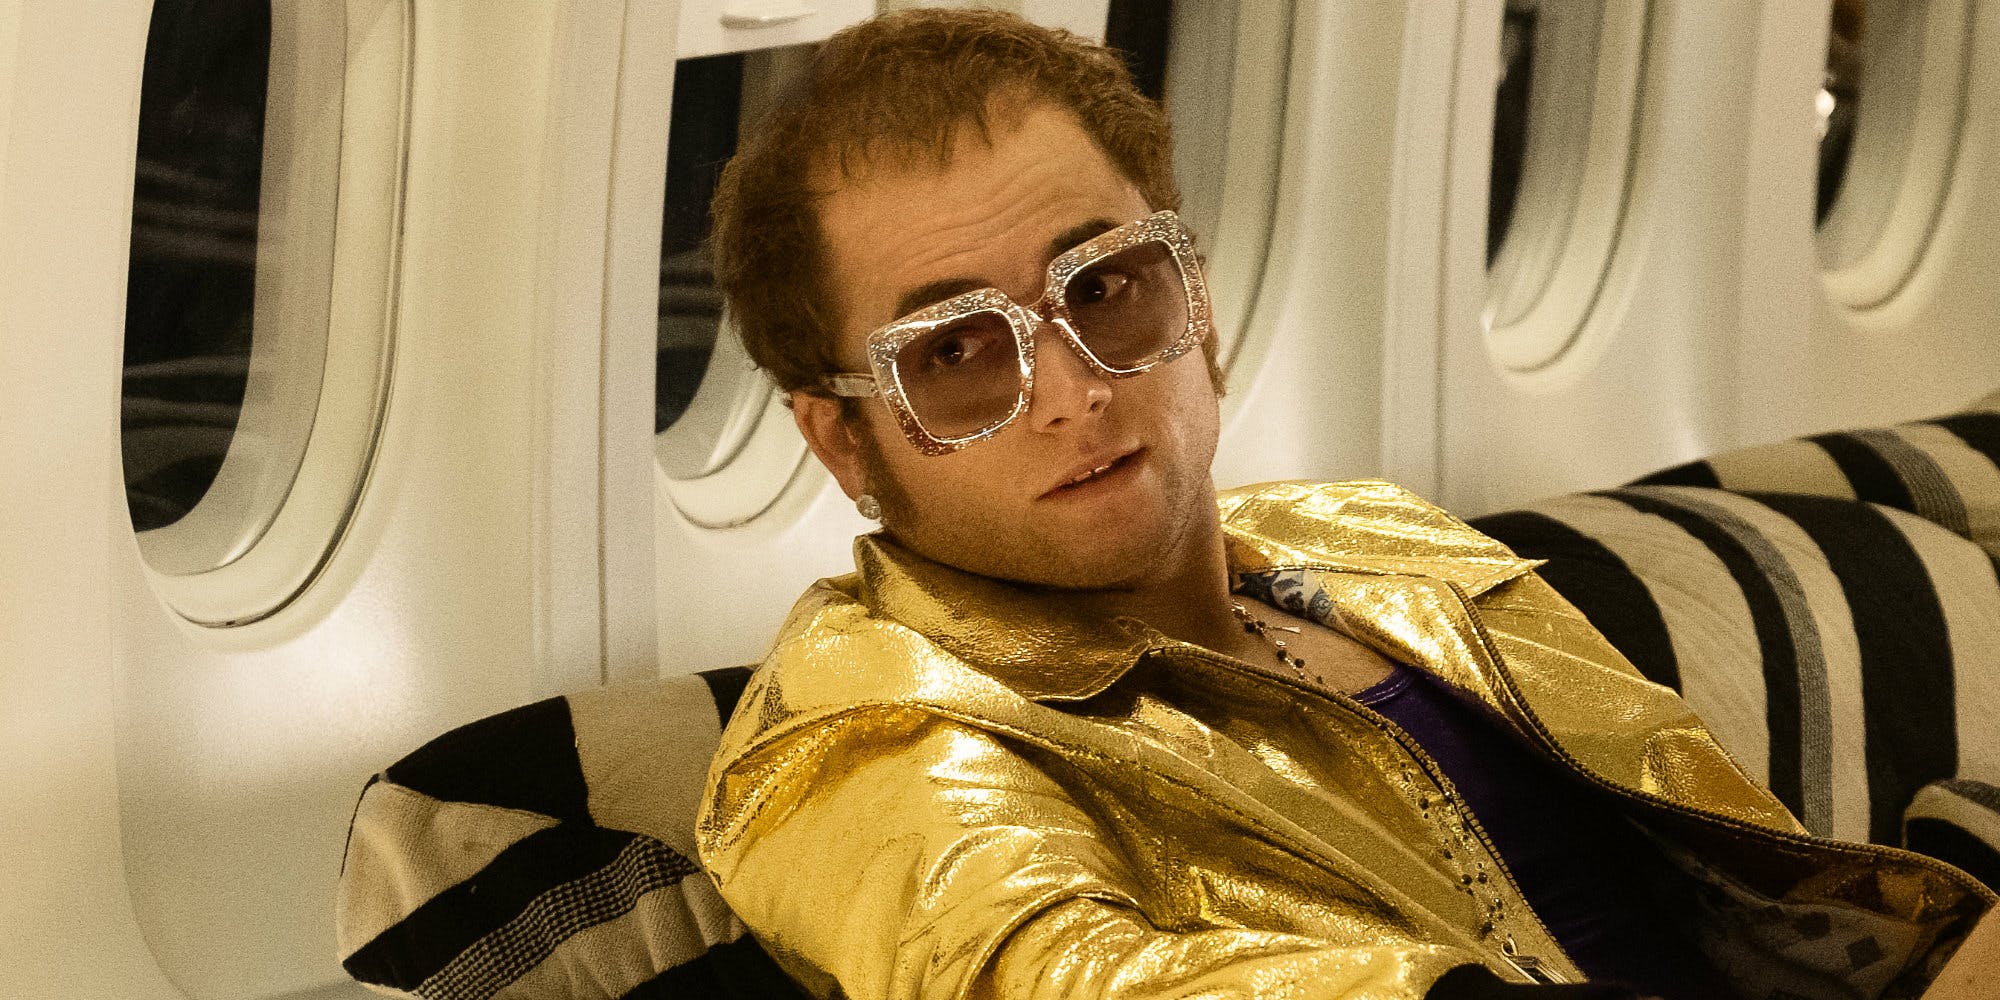 Ecco il nuovo trailer di Rocketman, biopic su Elton John